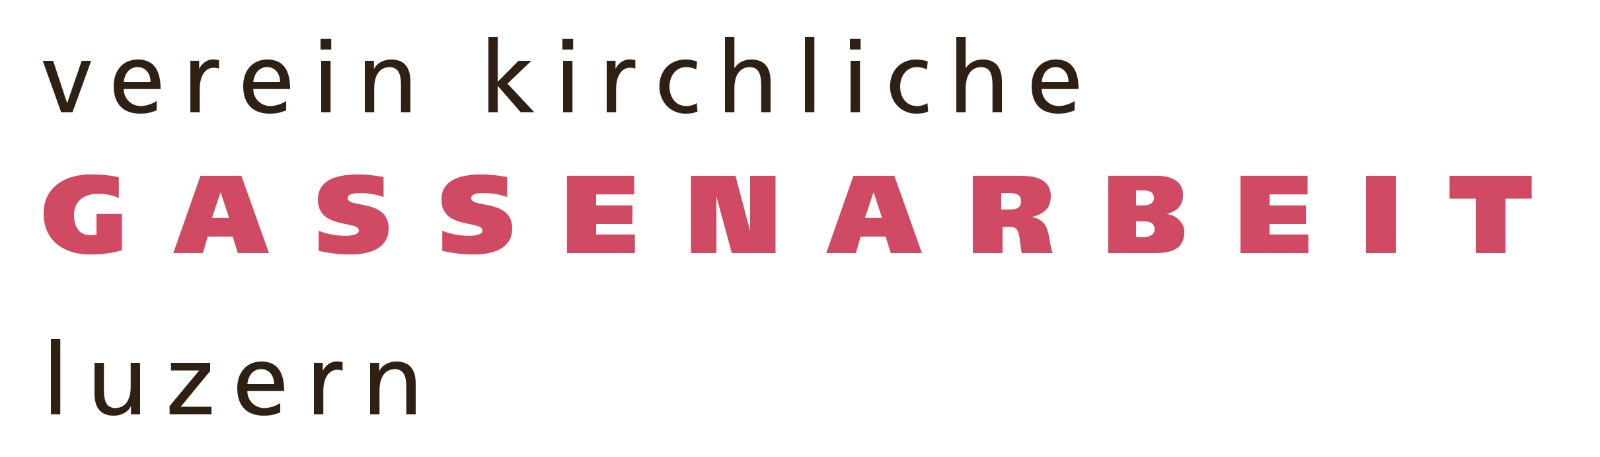 2401-LogoVerein Kirchliche Gassenarbeit.jpg